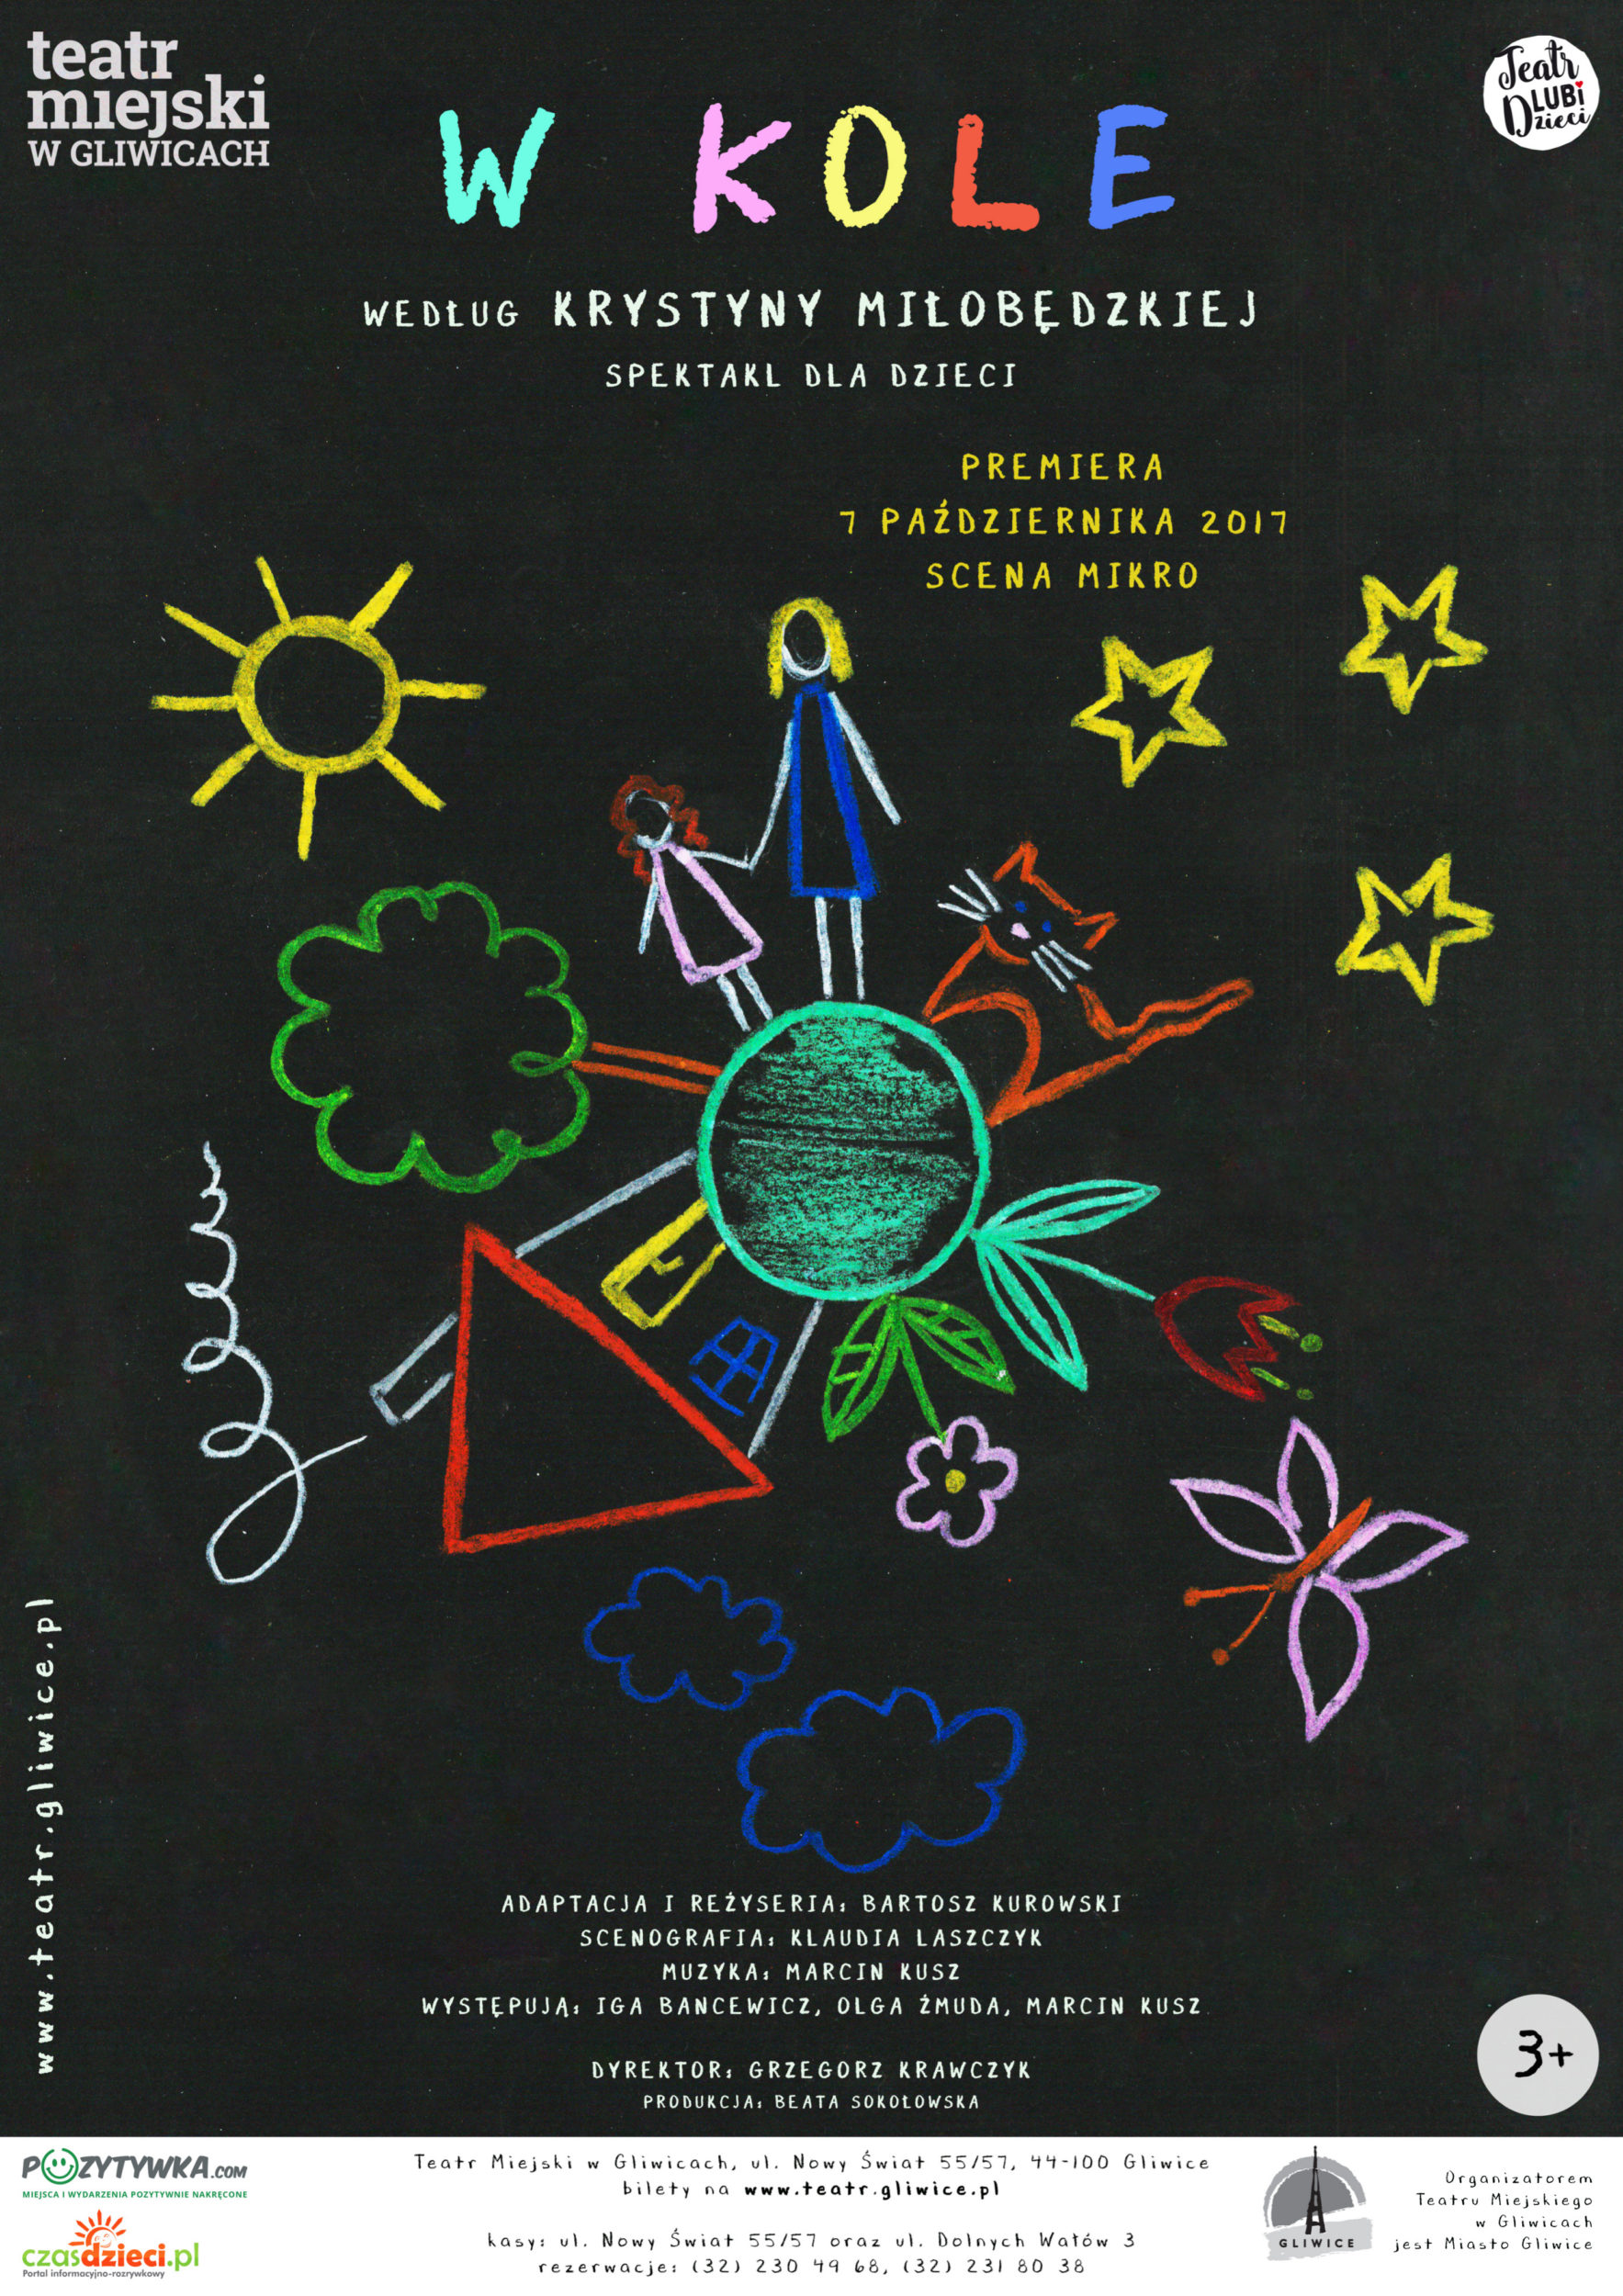 Na czarnym tle dziecięcy rysunek przedstawiający koło z postaciami dorosłego i dziecka, kota, roślin. Wokół narysowane są gwiazdy, słońce, motyl.